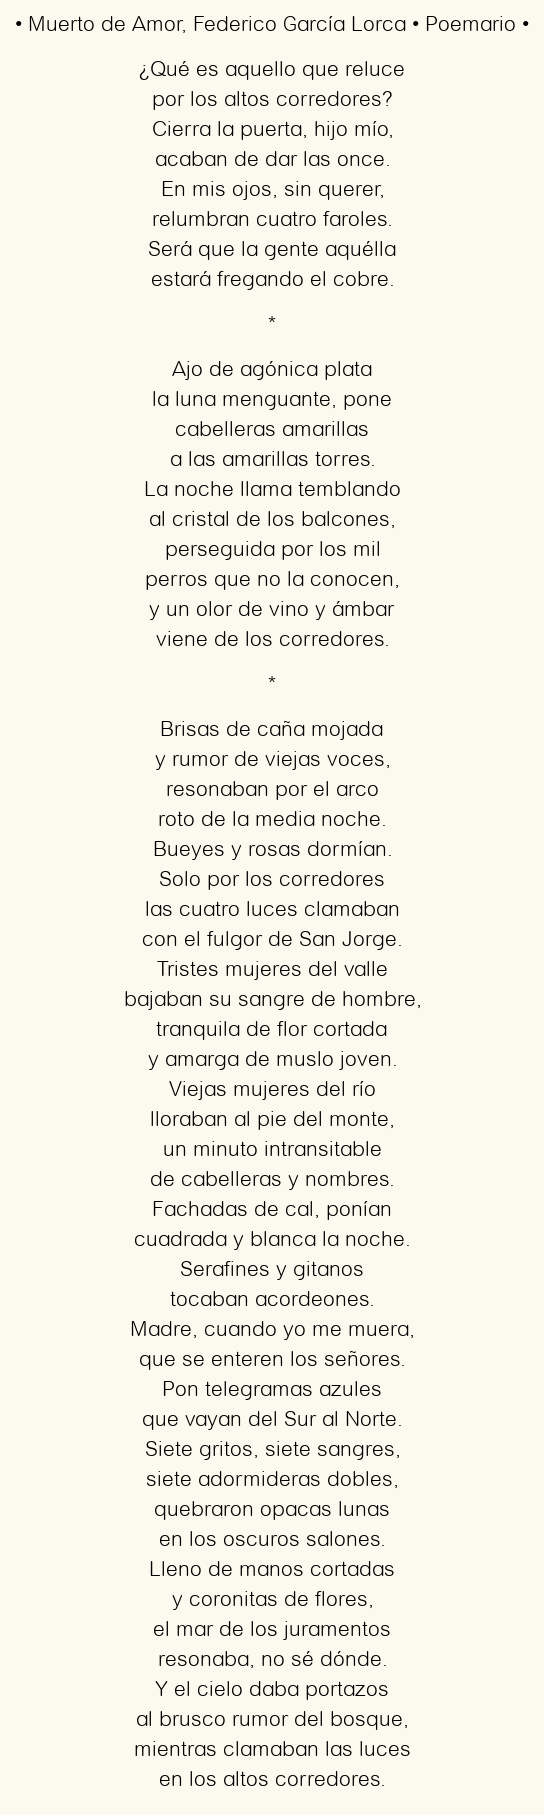 El amor incondicional en el poema ‘Perro’ de Mario Benedetti: un homenaje a la lealtad y fidelidad